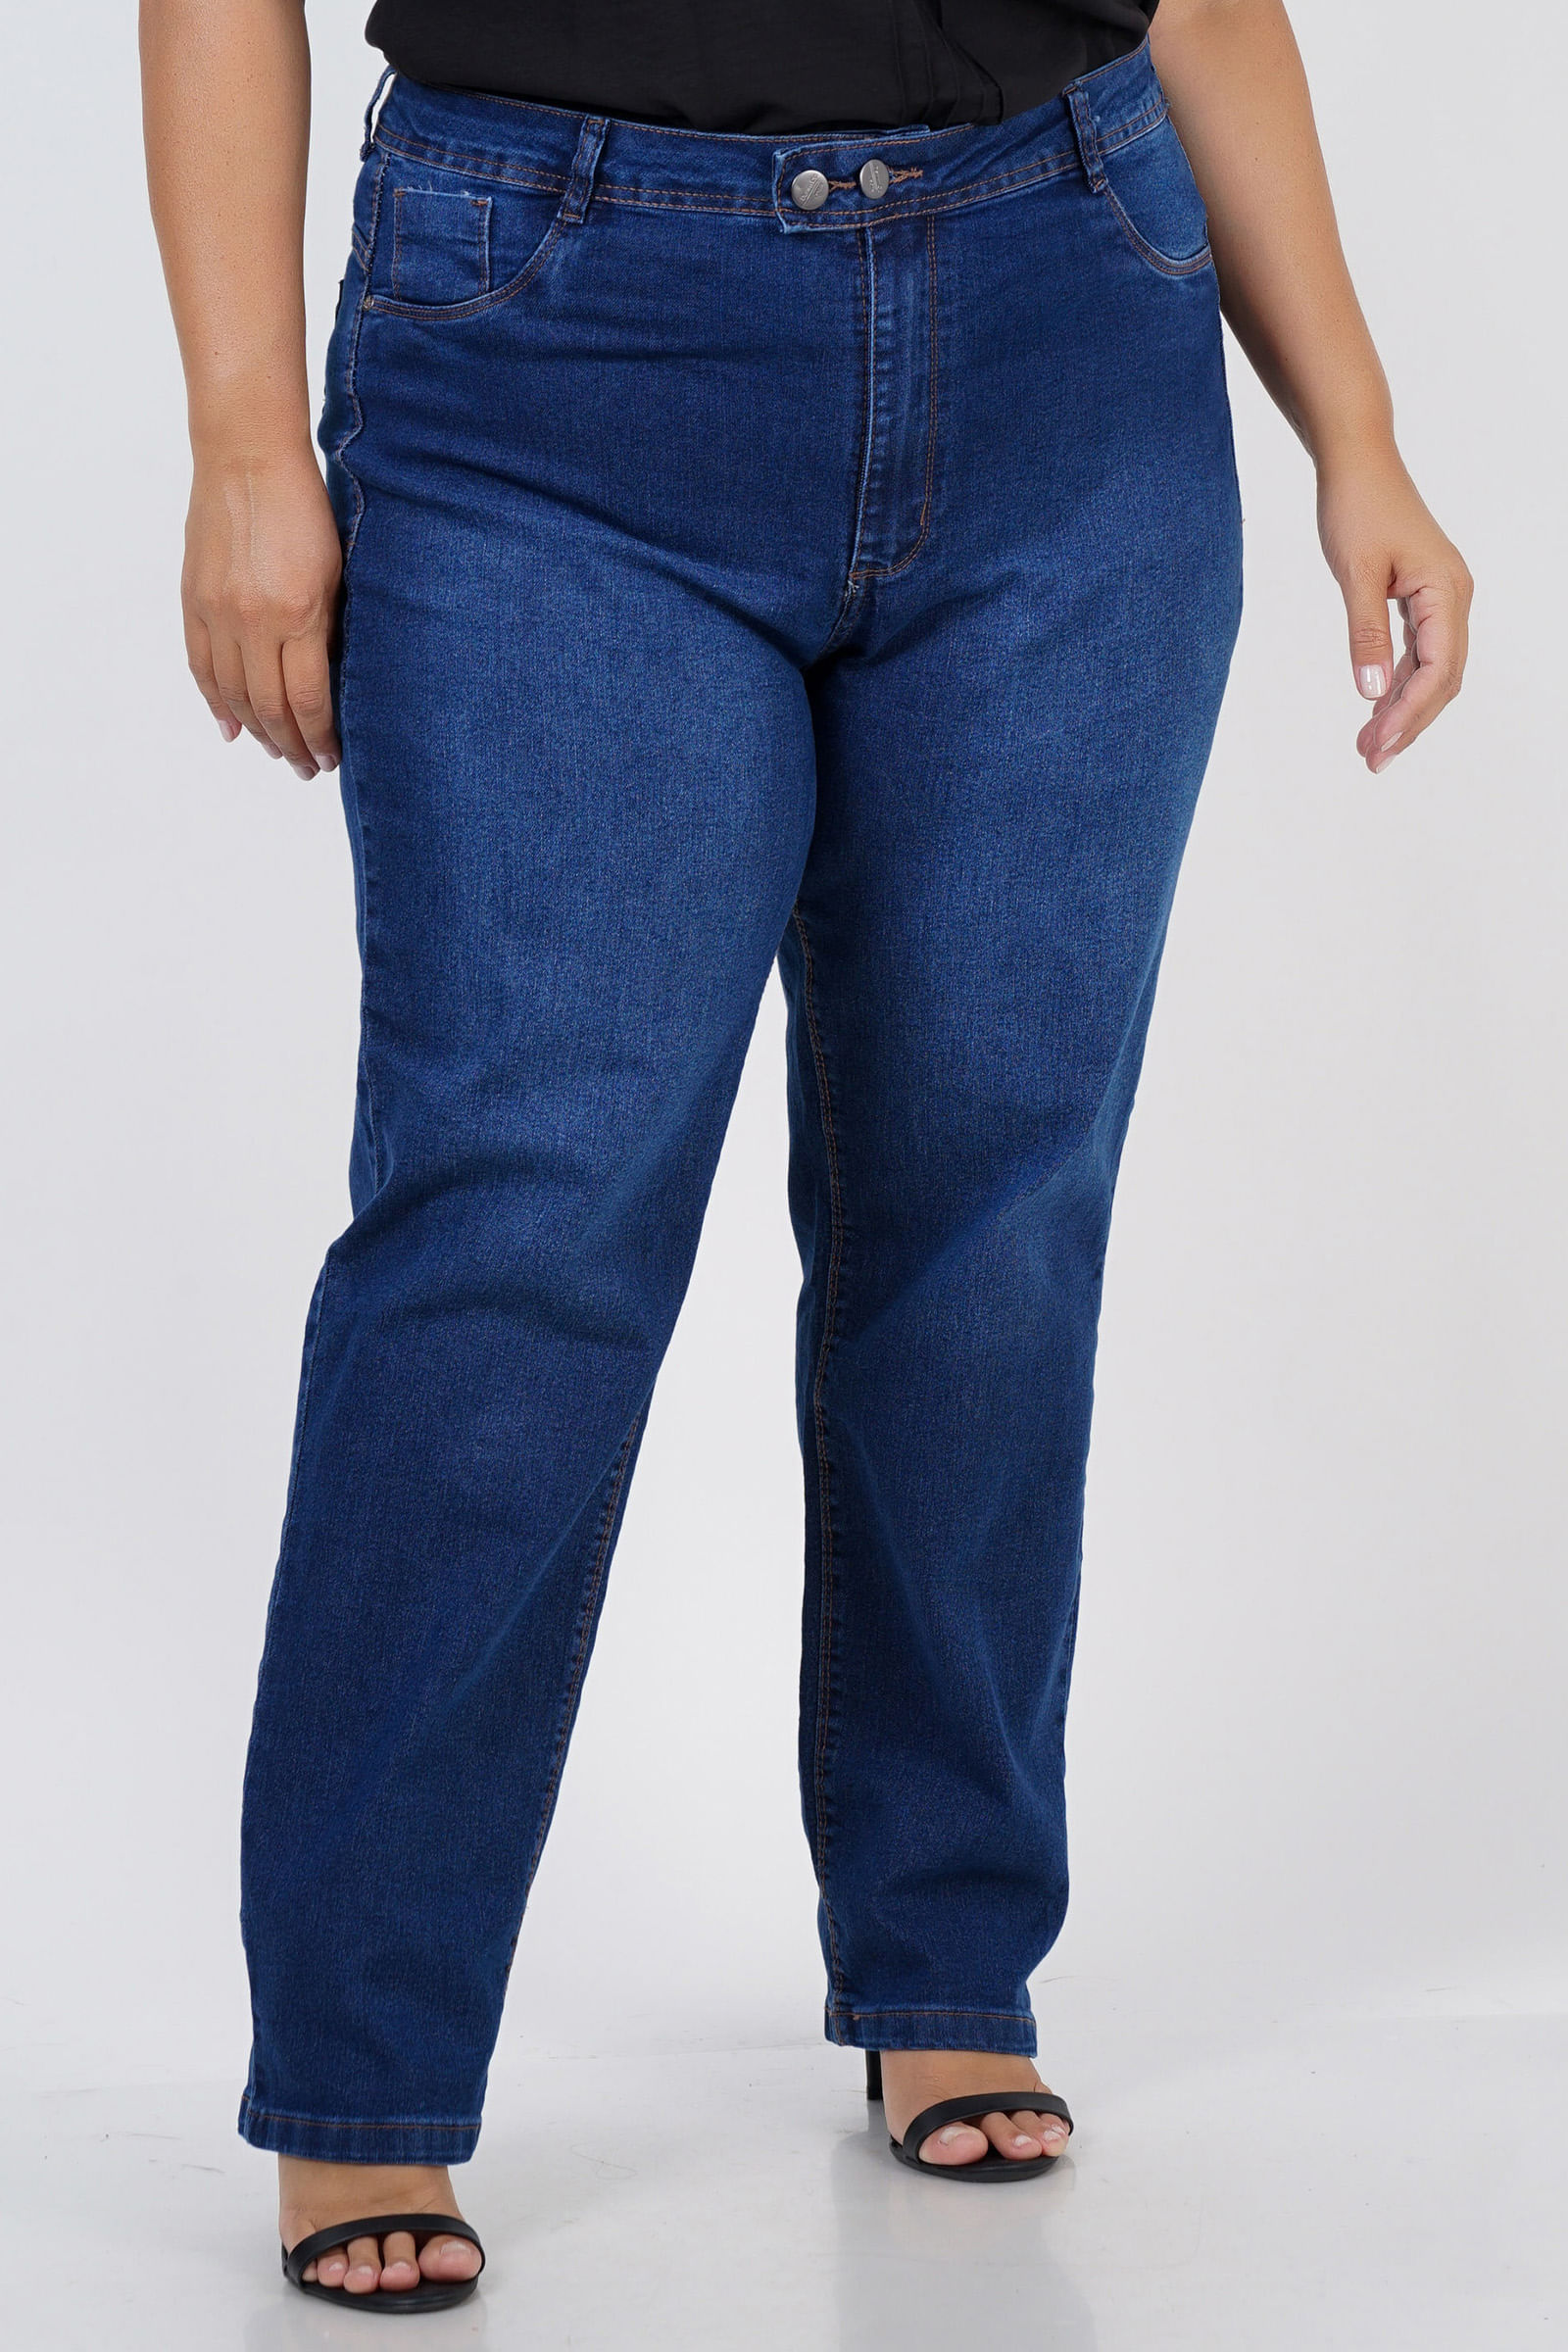 Calça reta jeans com dois botões plus size jeans blue - Kauê Plus Size